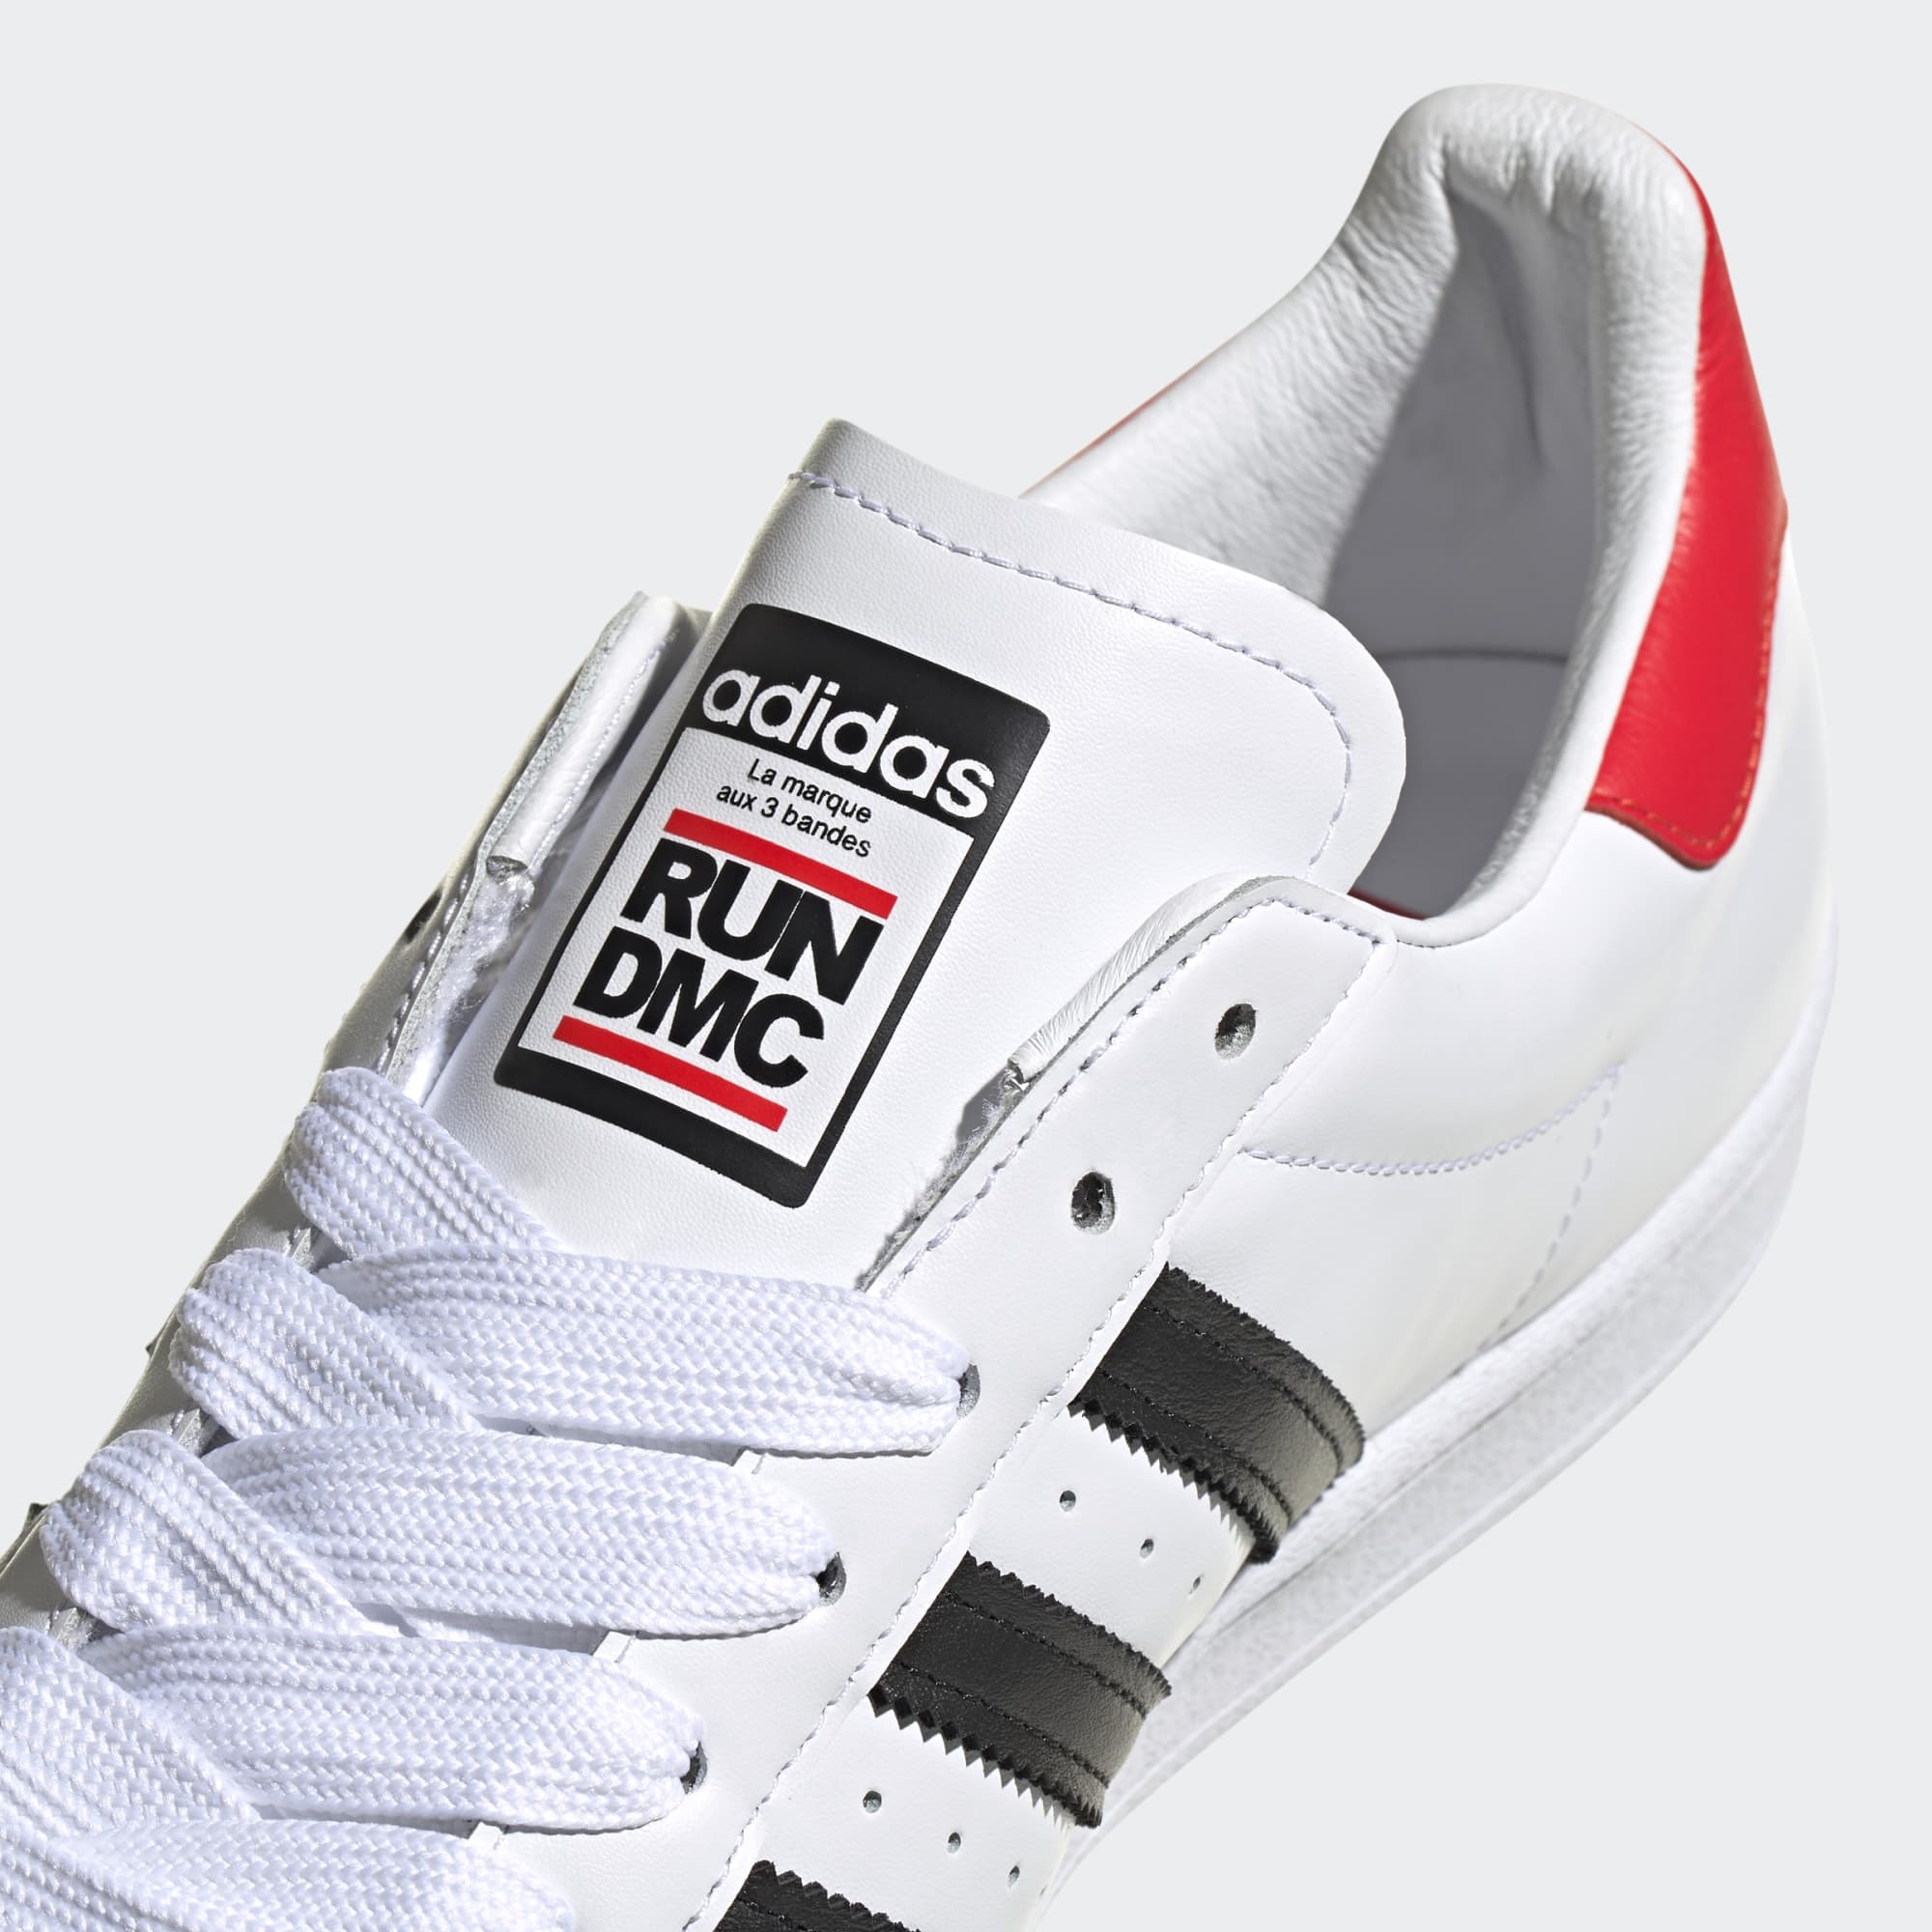 Run - - R1 Core Triple Black FX7616 | DMC x adidas Superstar White